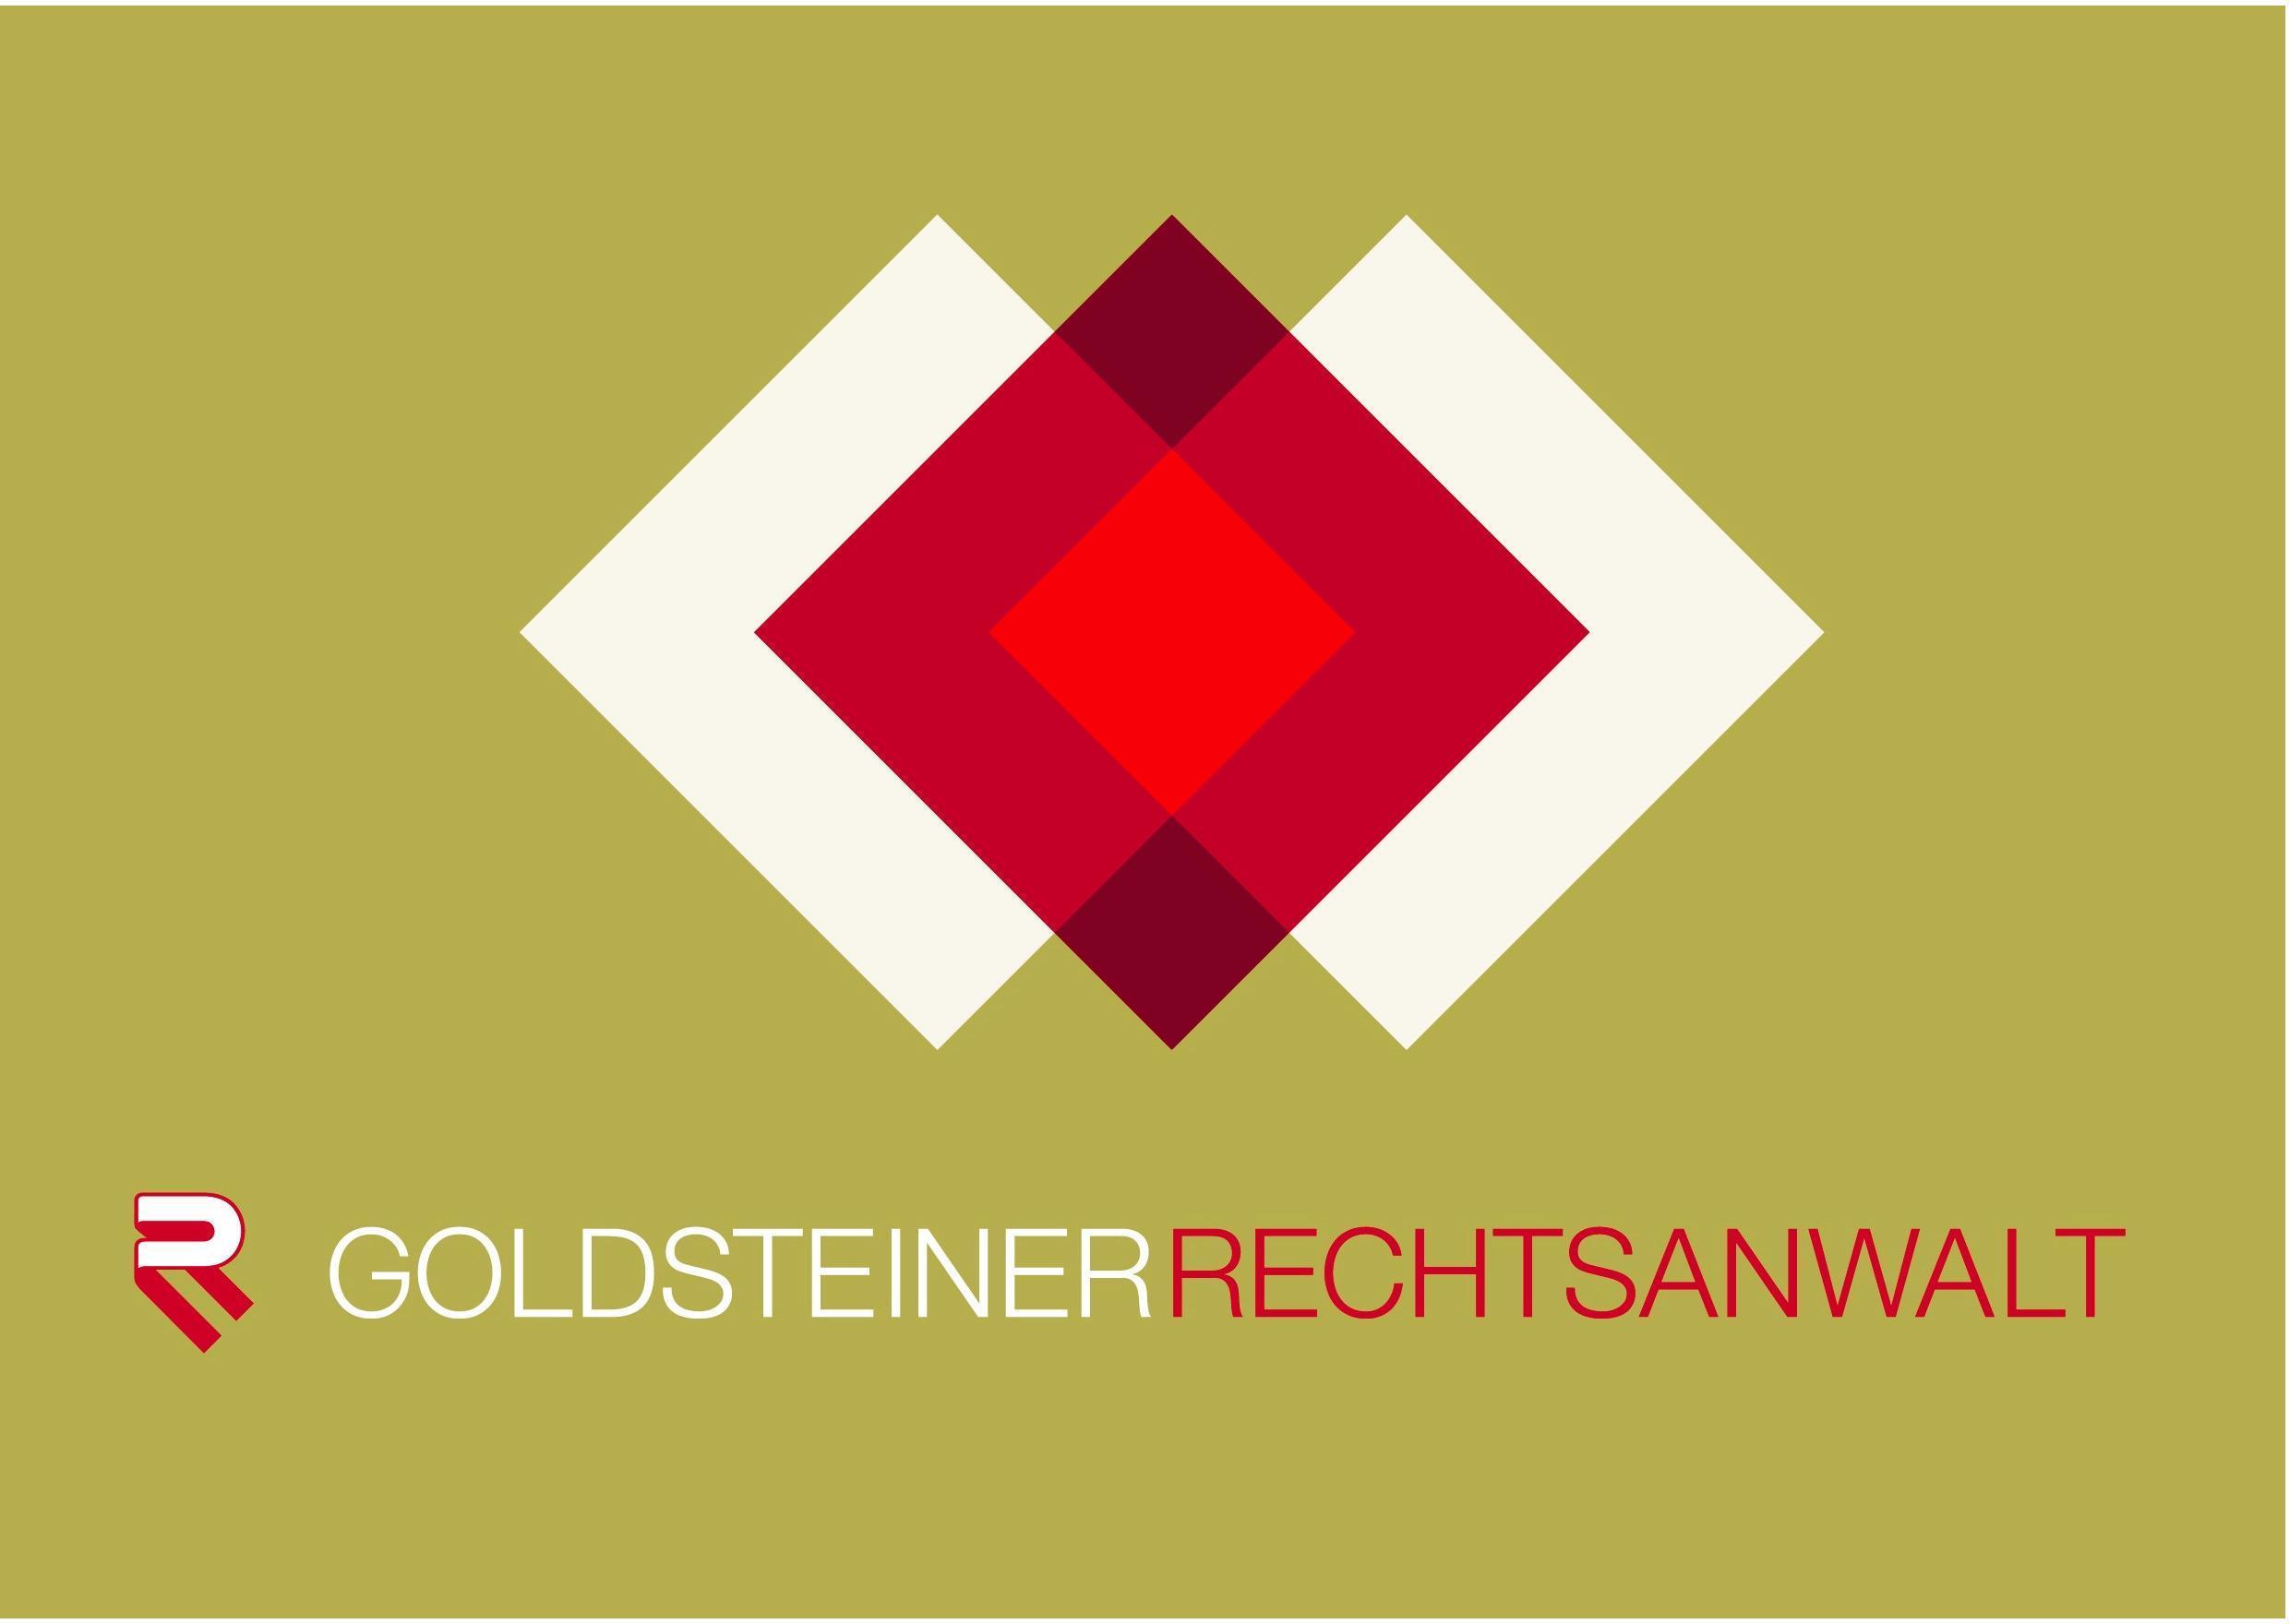 Logo Goldsteiner Rechtsanwälte